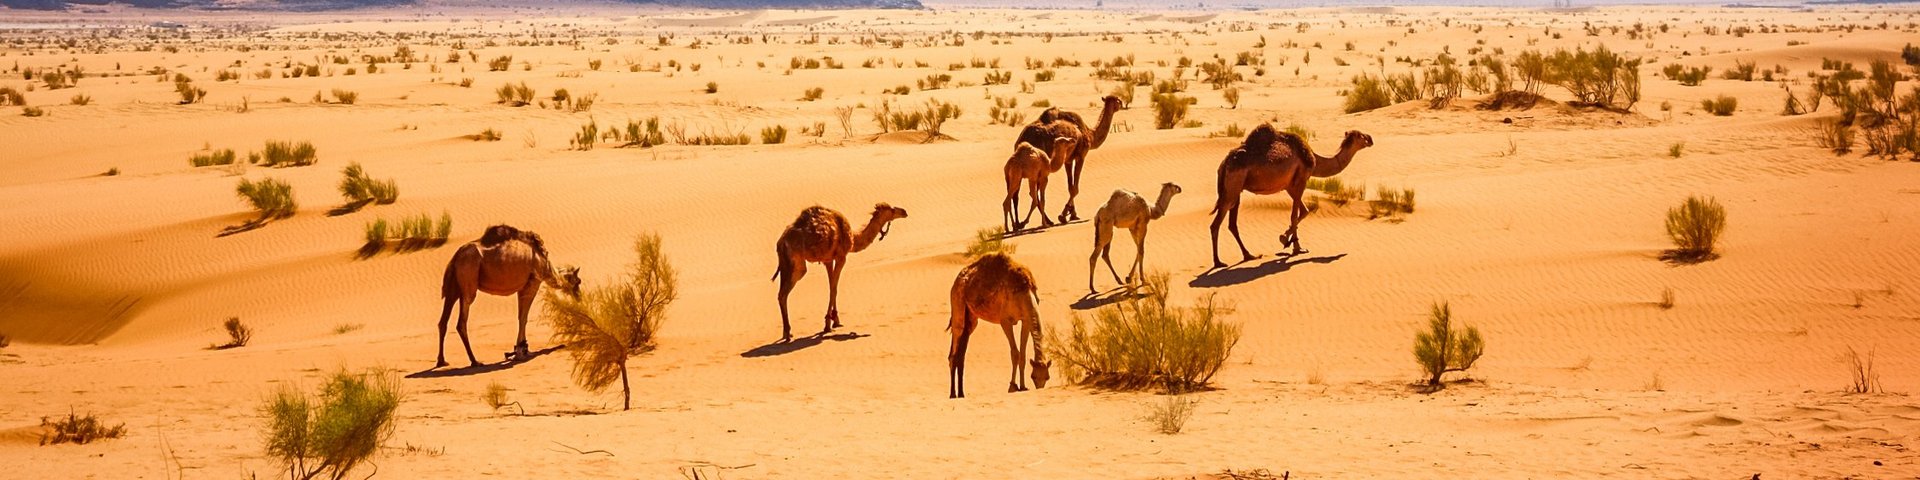 Kamelherde mit Jungtieren in der schönen Wüste von Jordanien